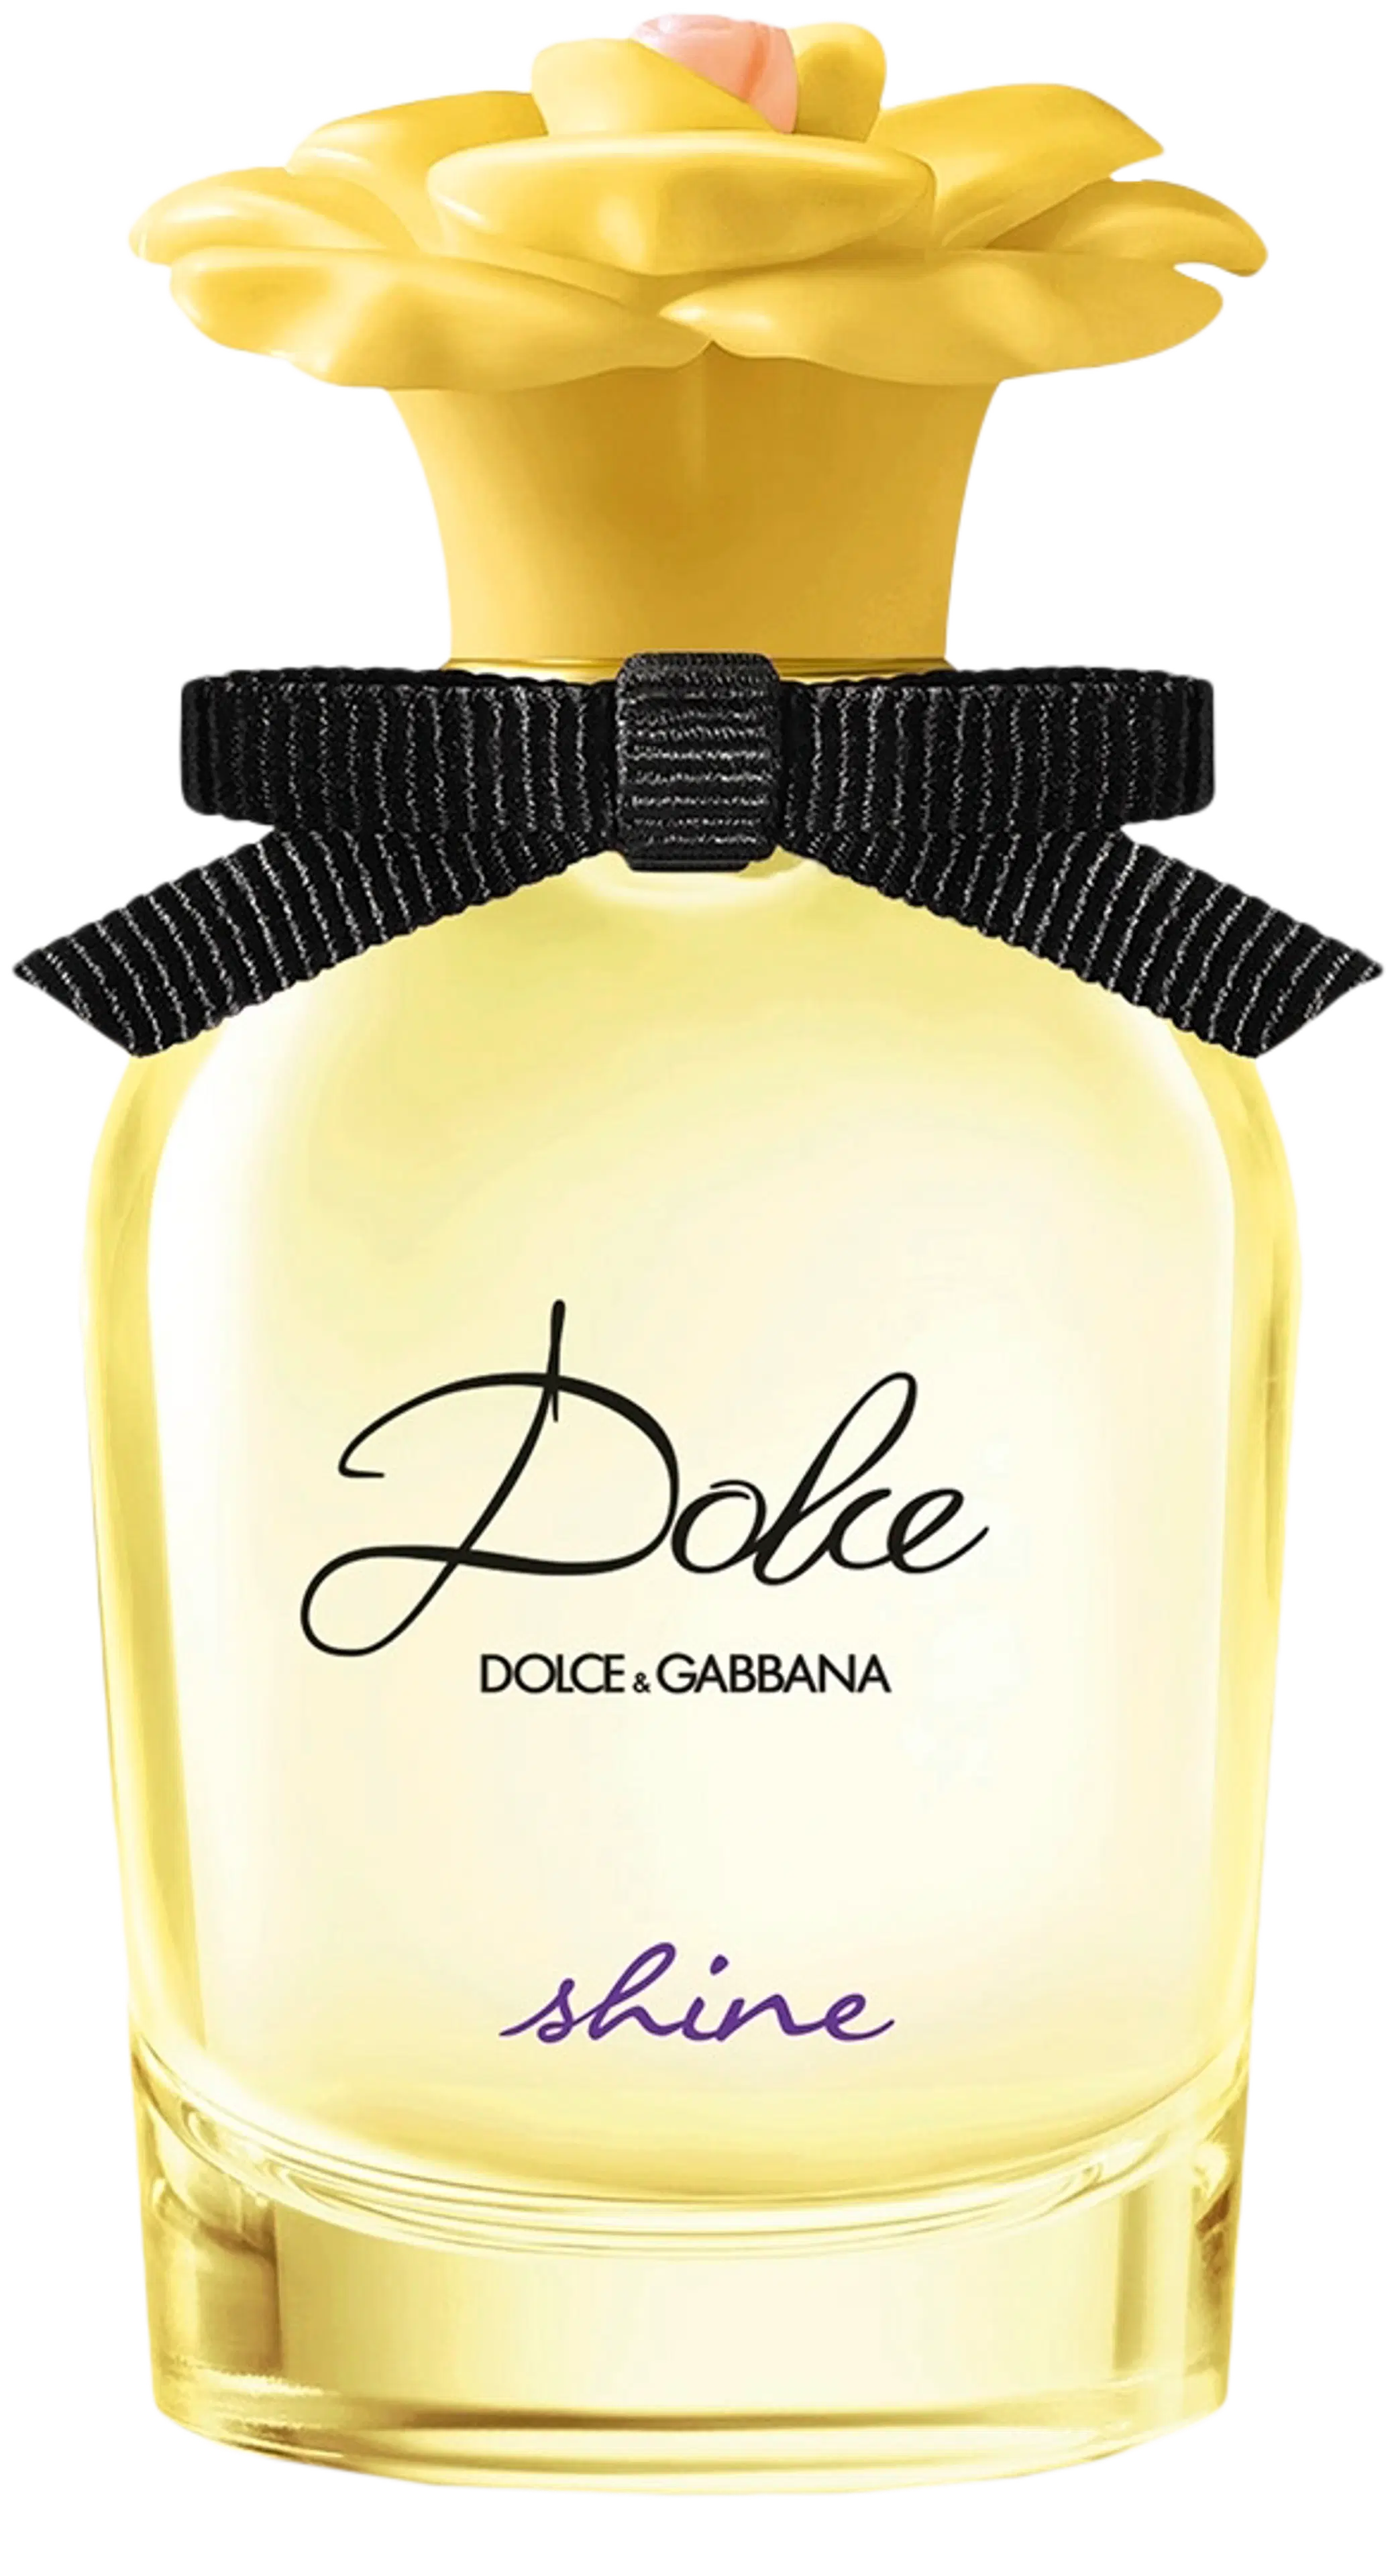 DOLCE & GABBANA Dolce Shine EdP tuoksu 30 ml